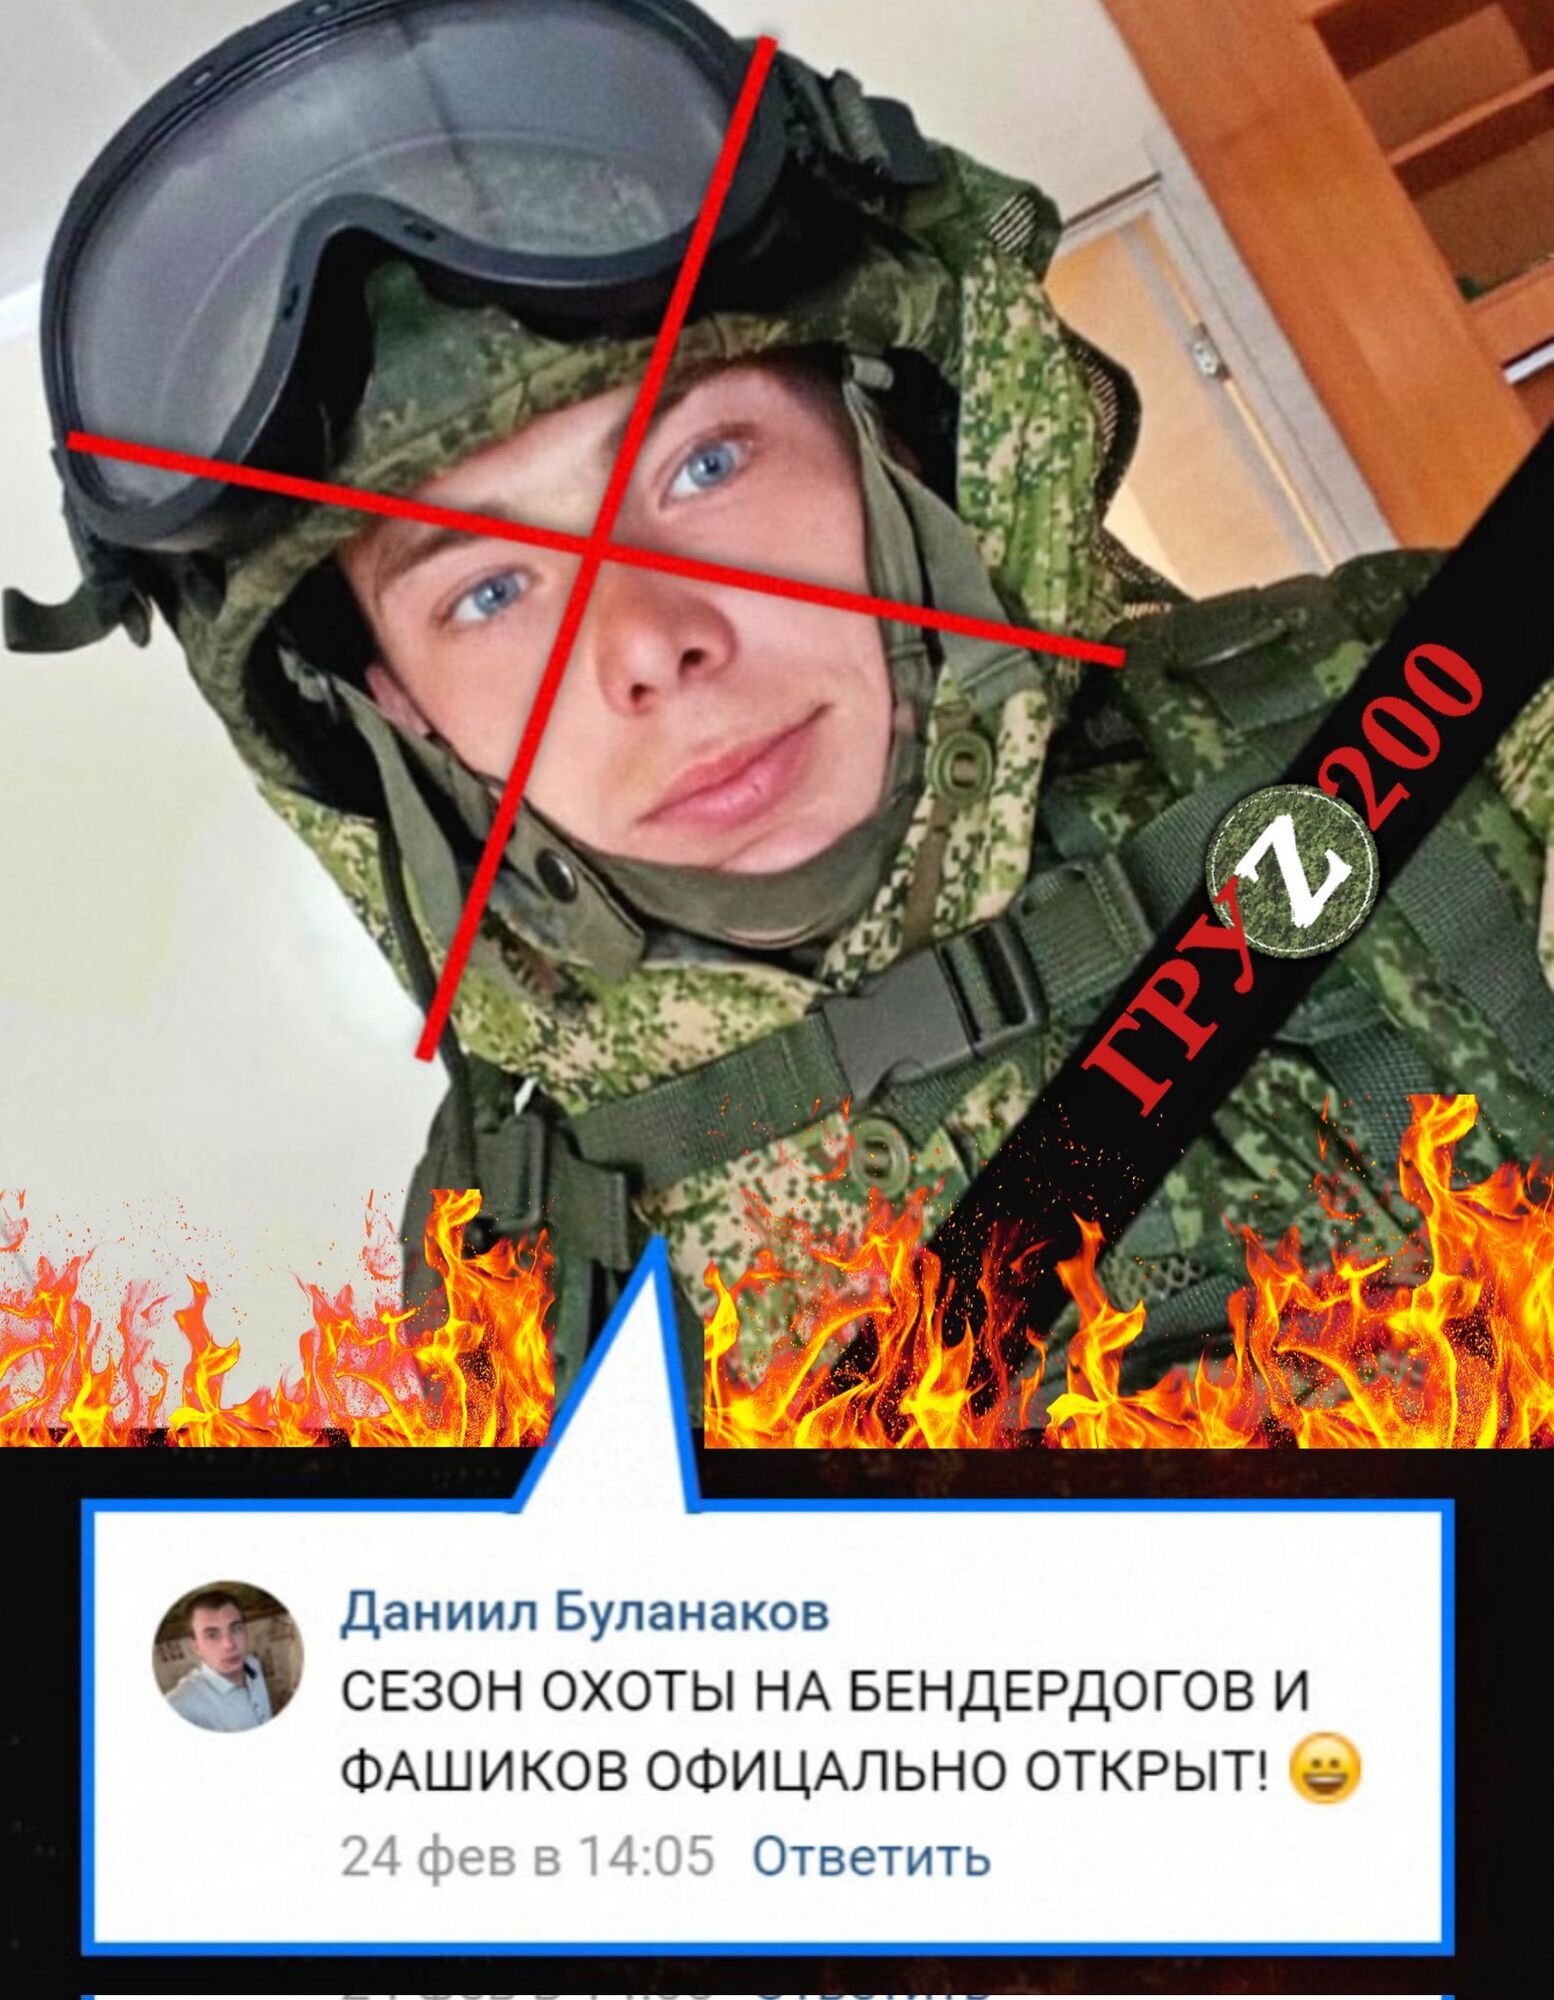 Оккупант Буланаков объявлял "сезон охоты на ВСУ"